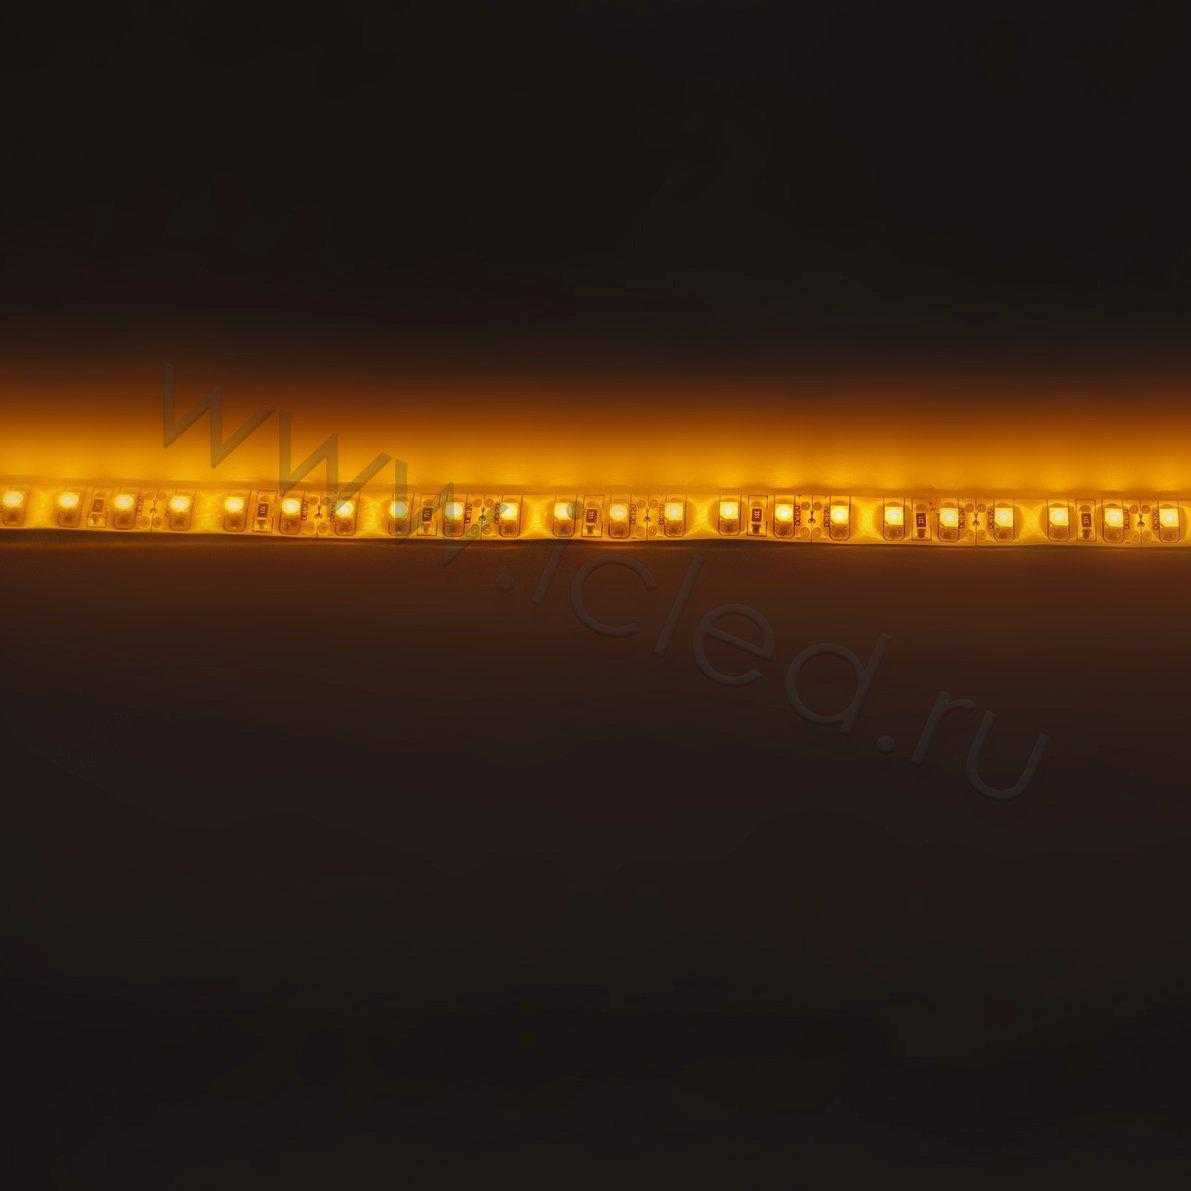 Влагозащищенные светодиодные ленты Светодиодная лента Standart PRO class, 3528, 120 led/m, Yellow, 12V, IP65 Icled